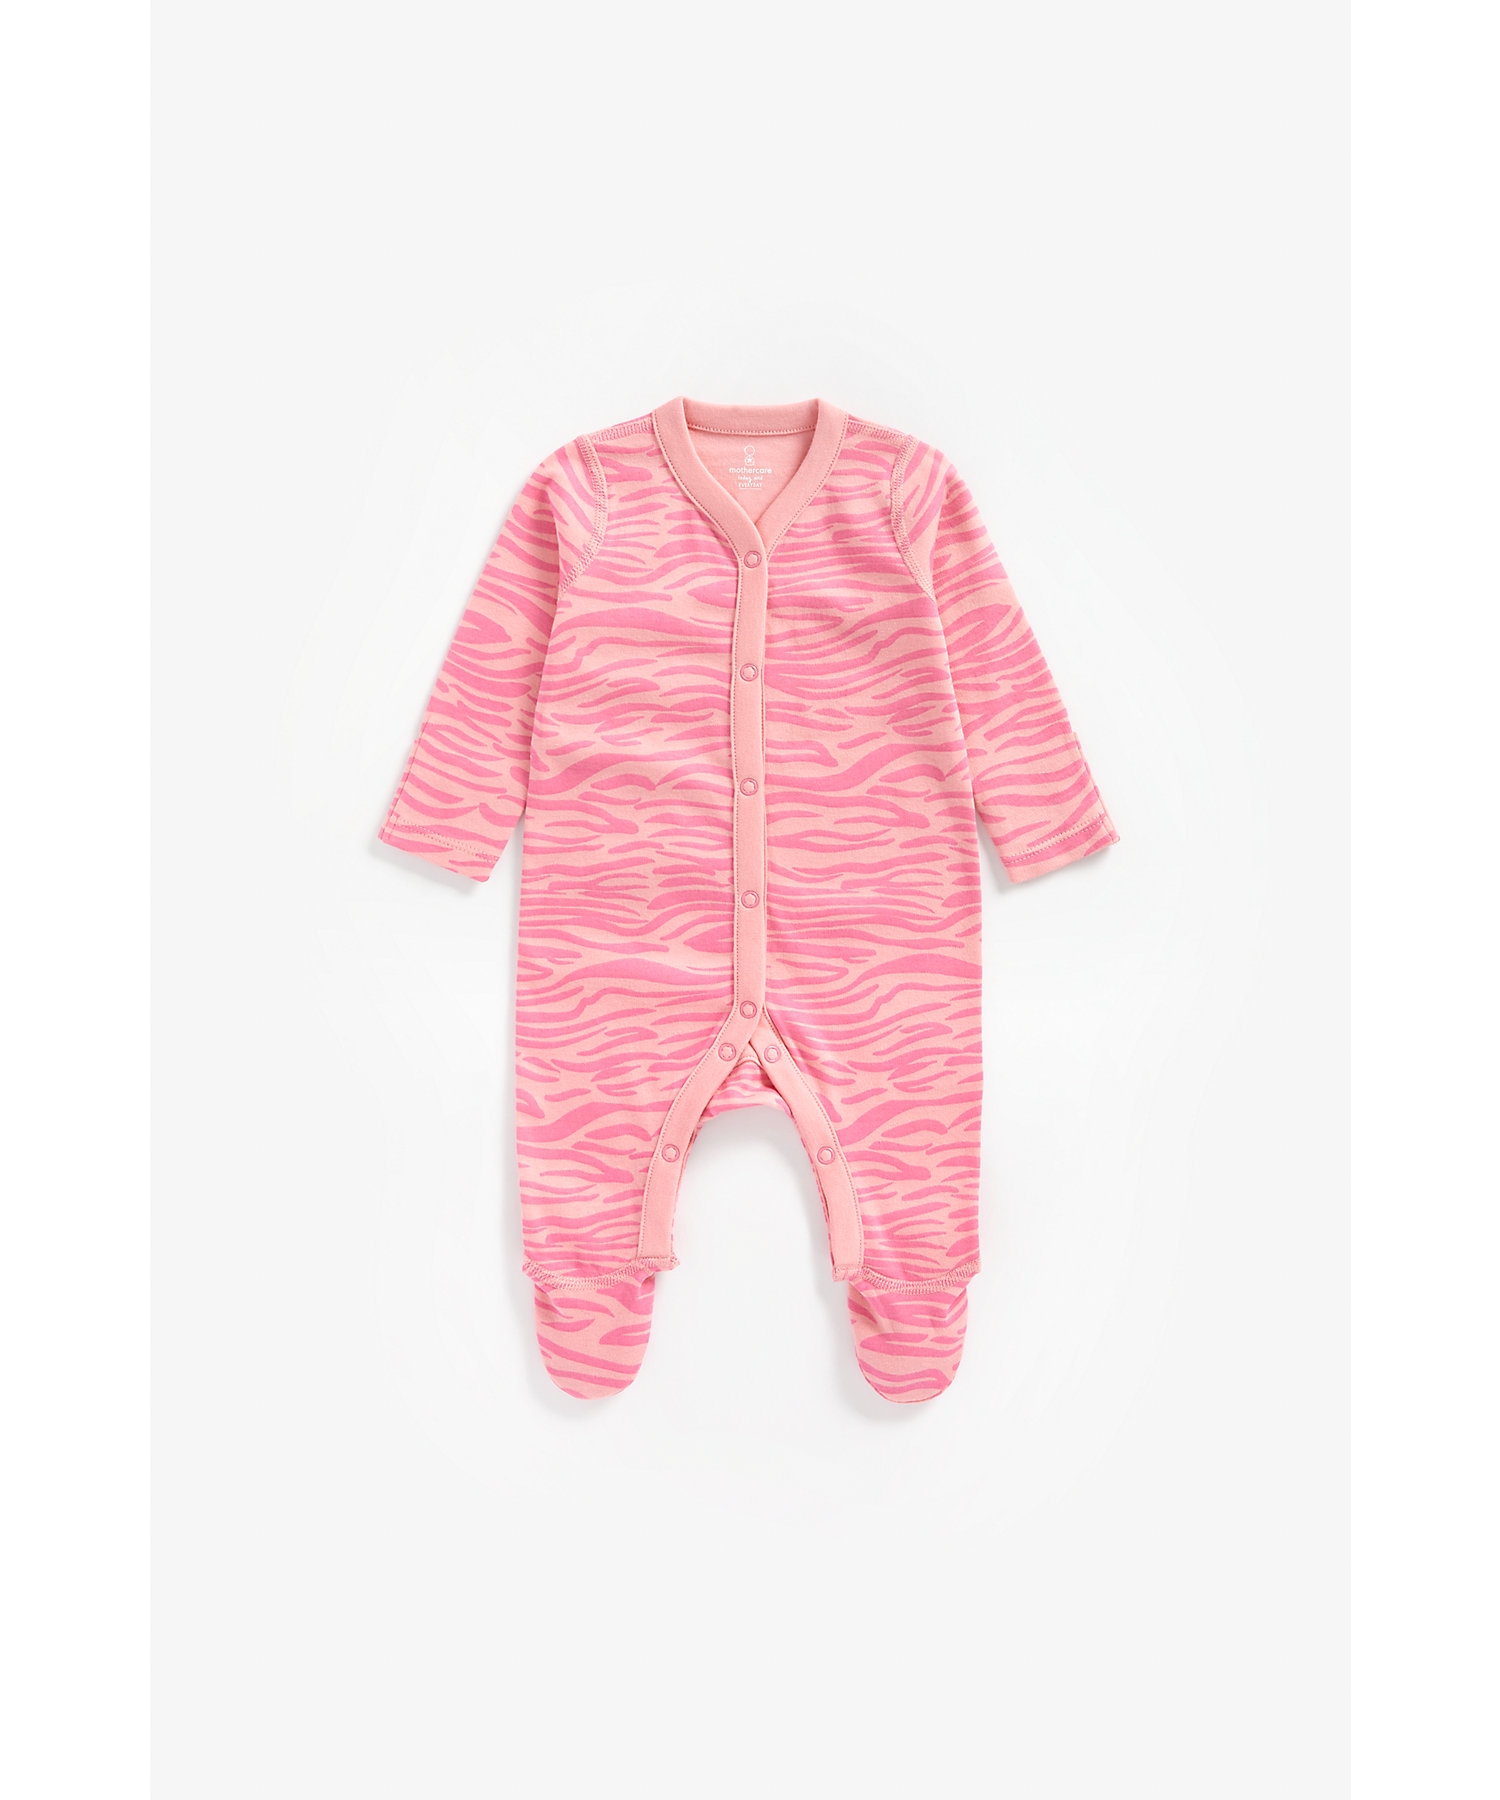 Mothercare | Girls Full Sleeves Romper Zebra Print - Pink